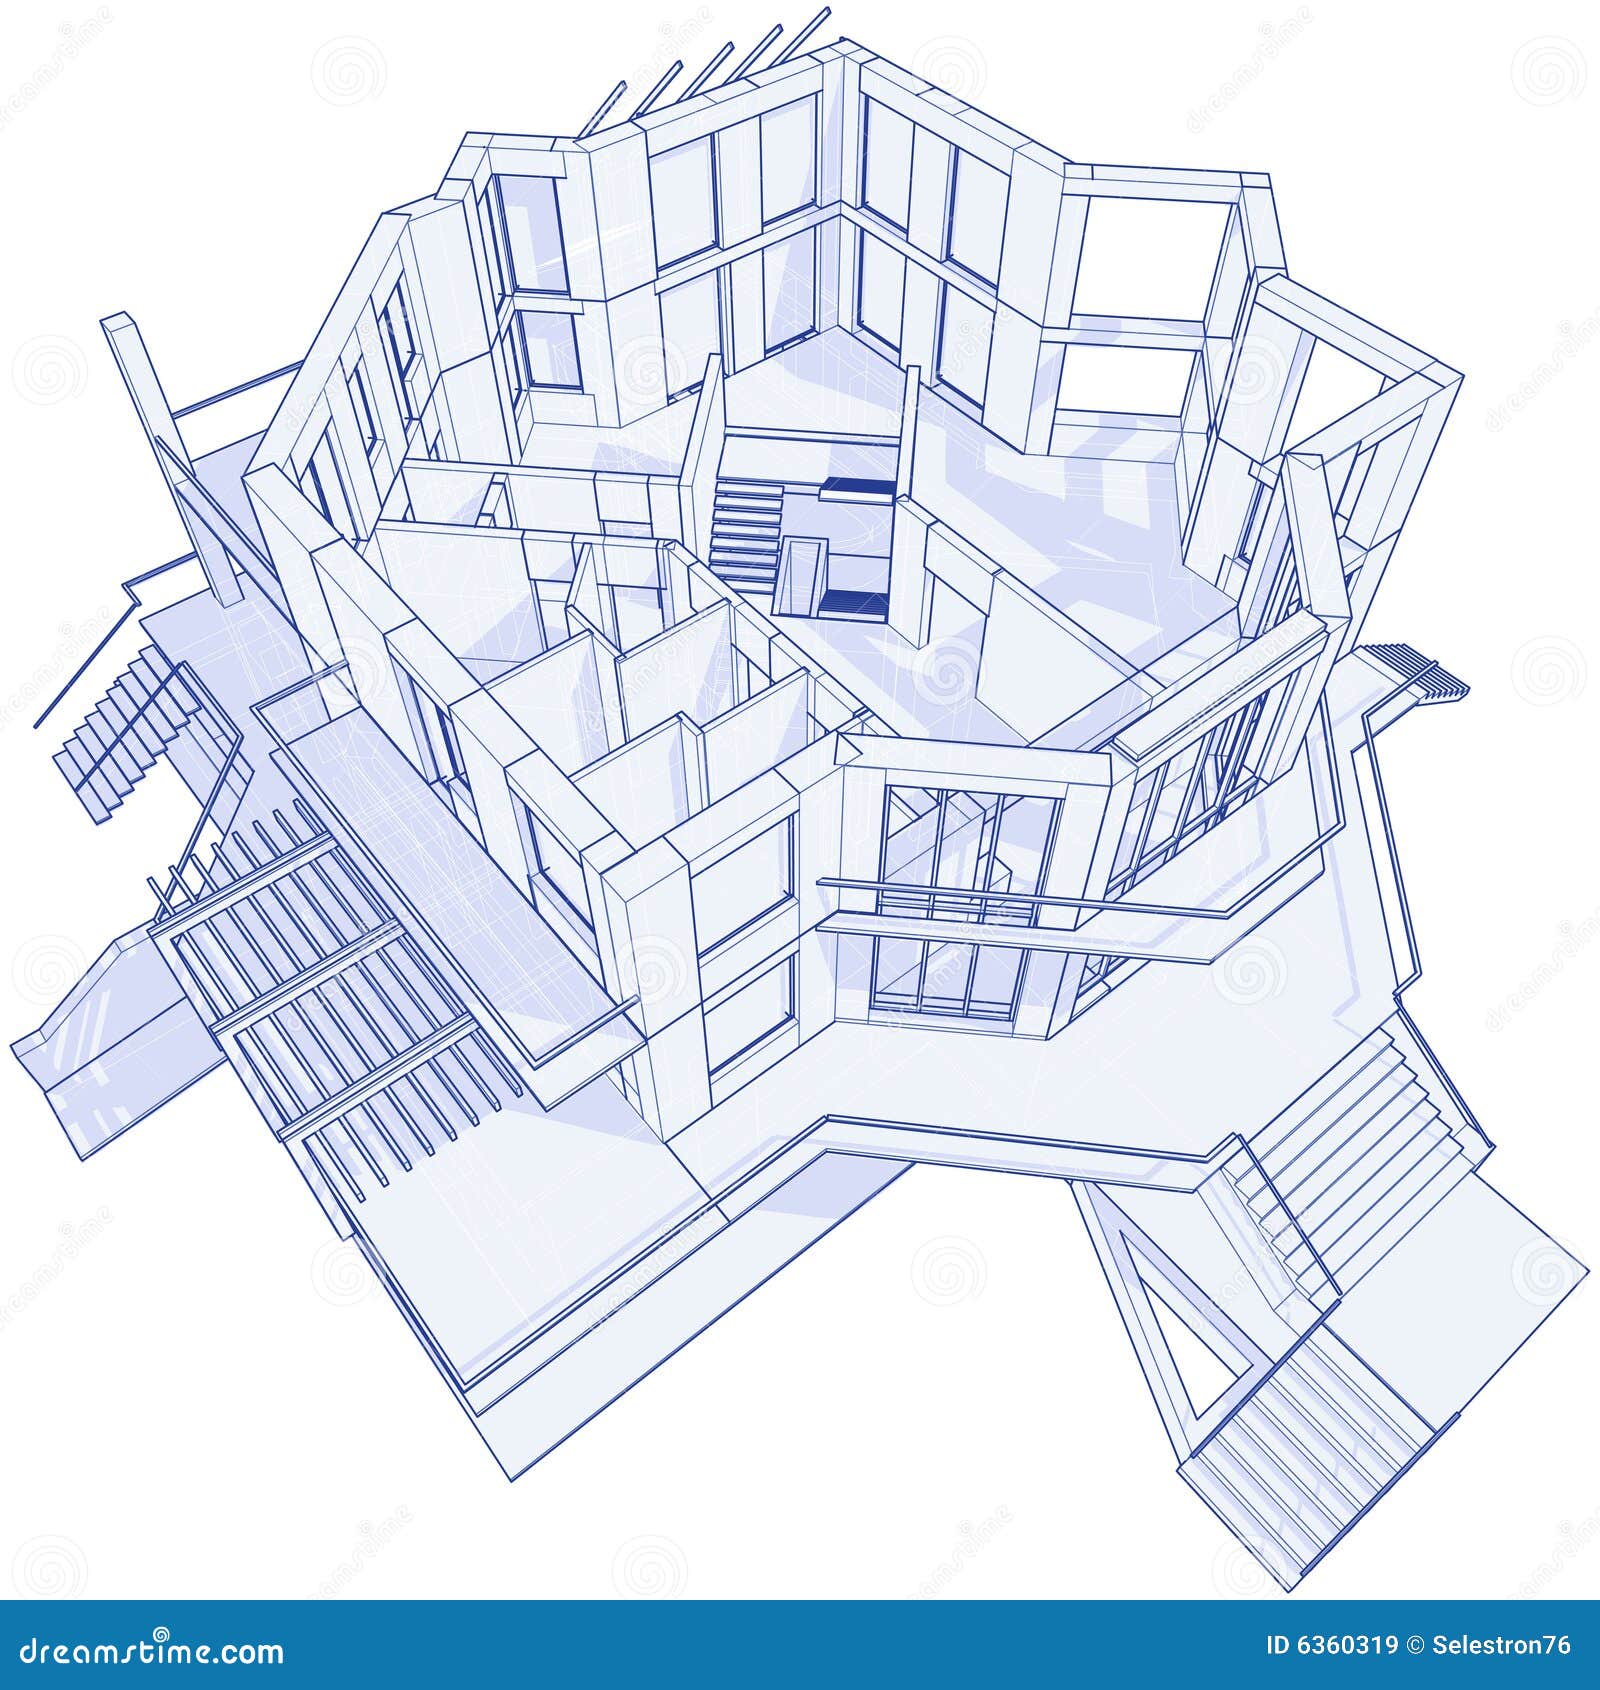 Modern house blueprint stock vector Illustration of 